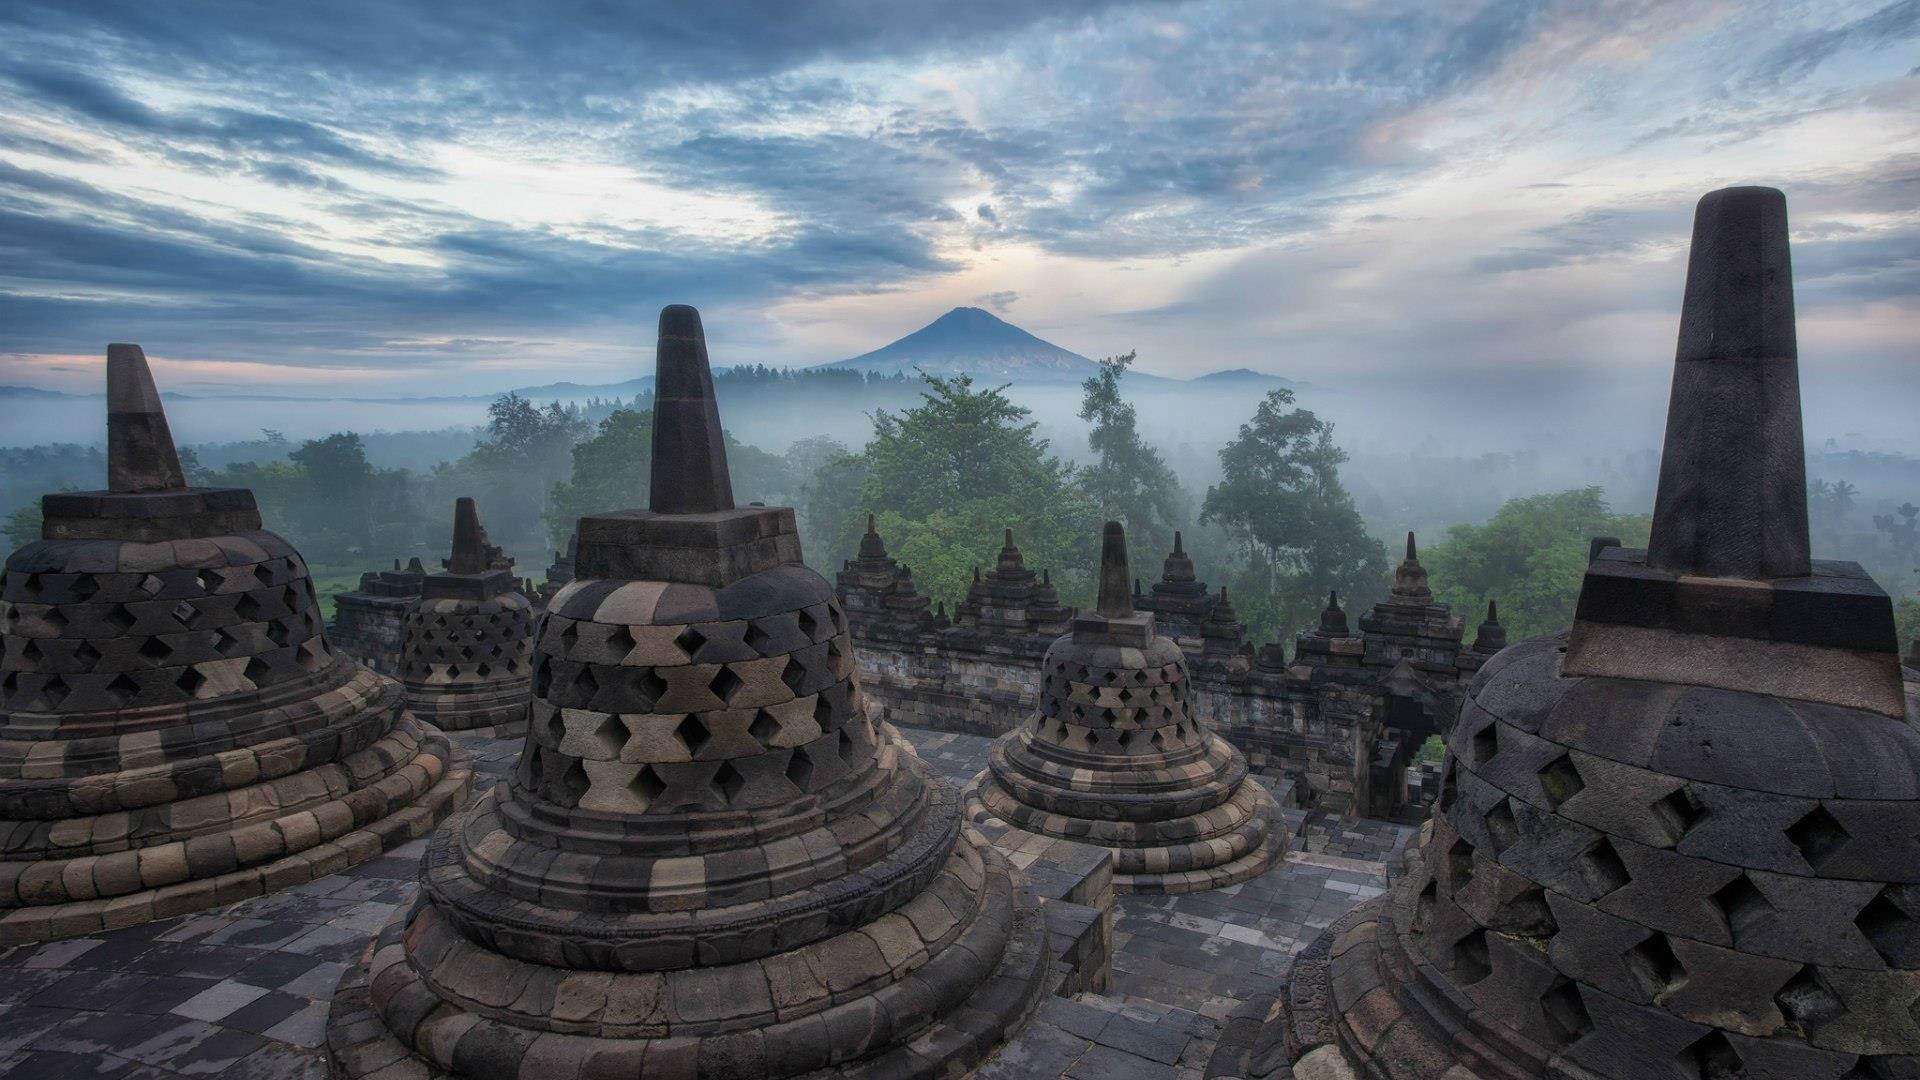 Indonesia__the_island_of_Java__Borobudur_Temple